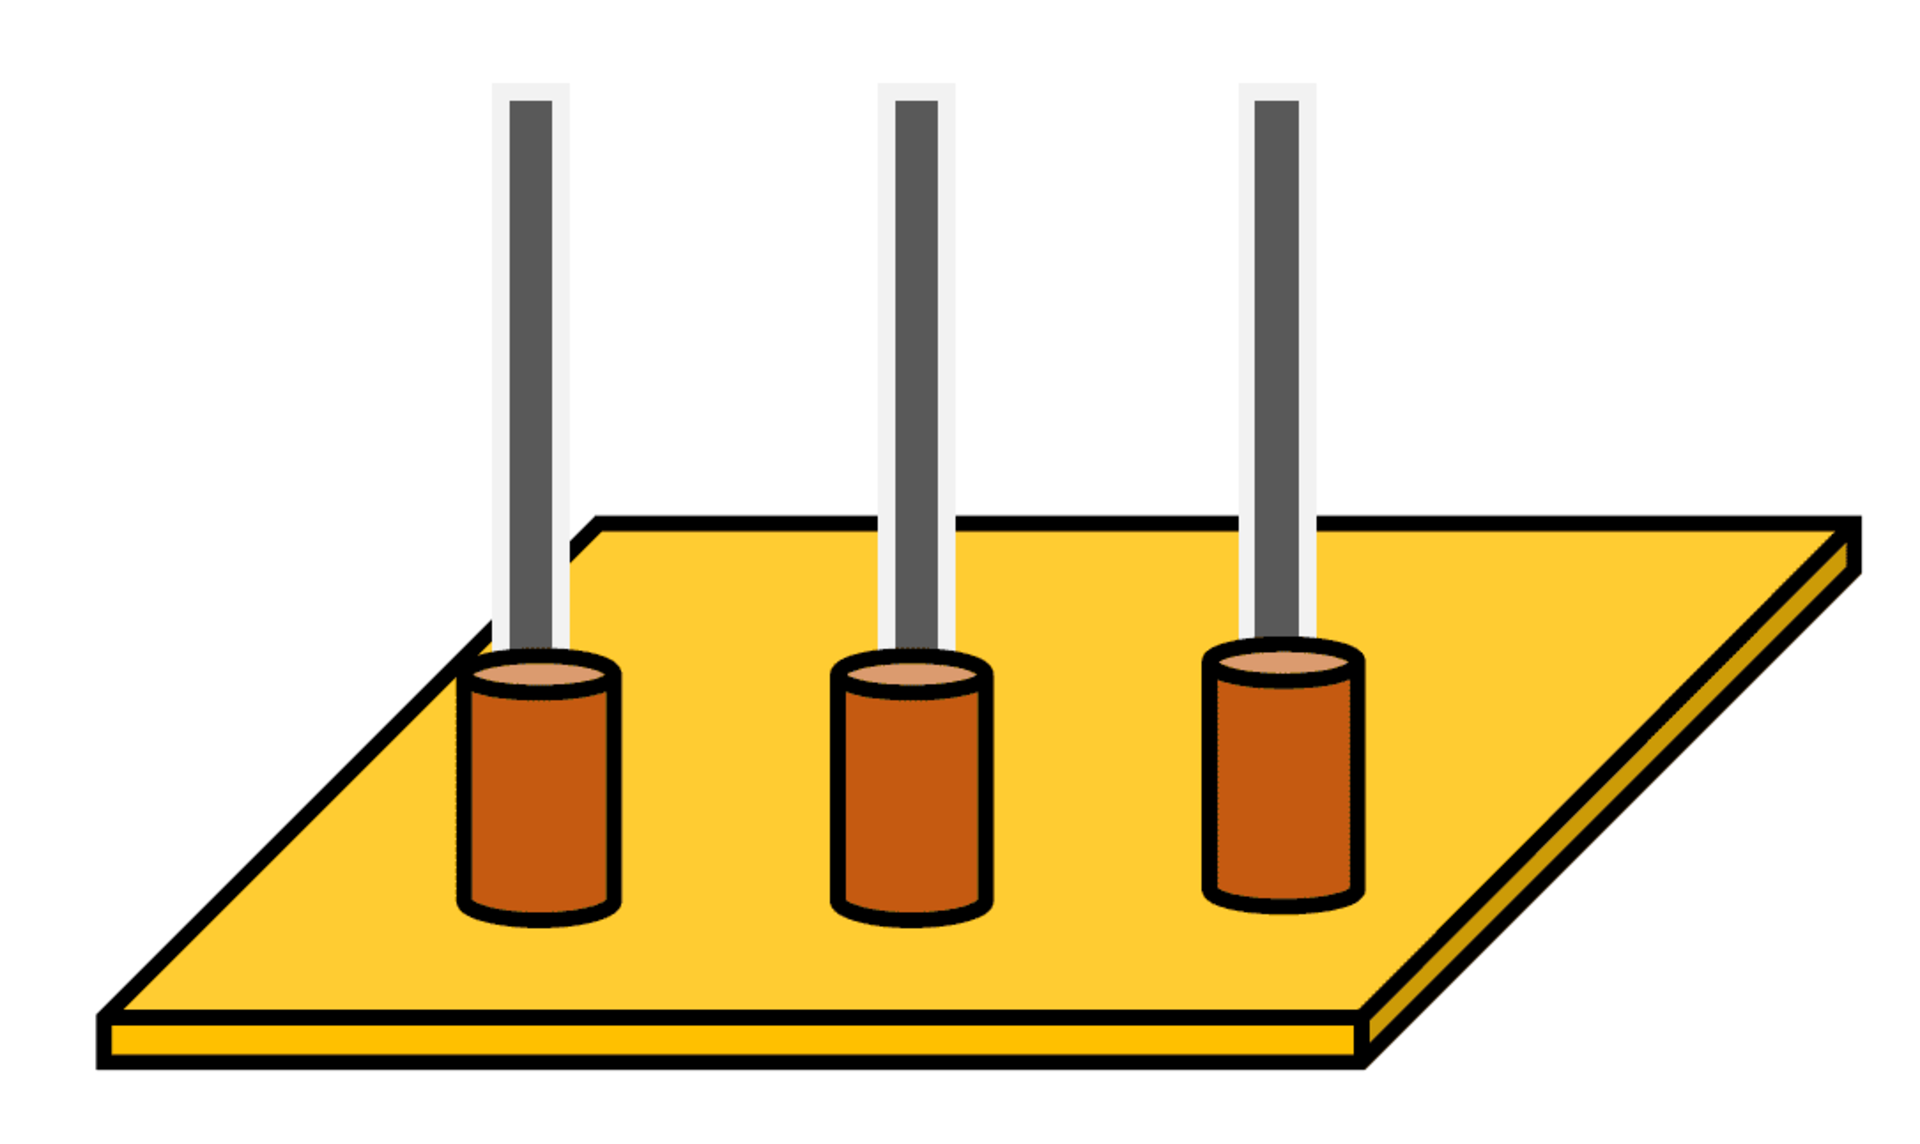 ギ酸リフローの技術はスリーブ端子（ピンホルダー）の接合にも使用される事例が見られます。スリーブ端子は基板のスルーホールと同様の役割を担え、プレスフィットピンや端子・ピンを接続する事が可能となり、端子を基板へ直接はんだ付けする工程を簡略化できます。通常のはんだペーストによる接合ではスリーブ端子内には多くのフラックス残渣が残存する事となりますが、ギ酸リフローであれば残渣レスとなり、物理的な障害は皆無となります。